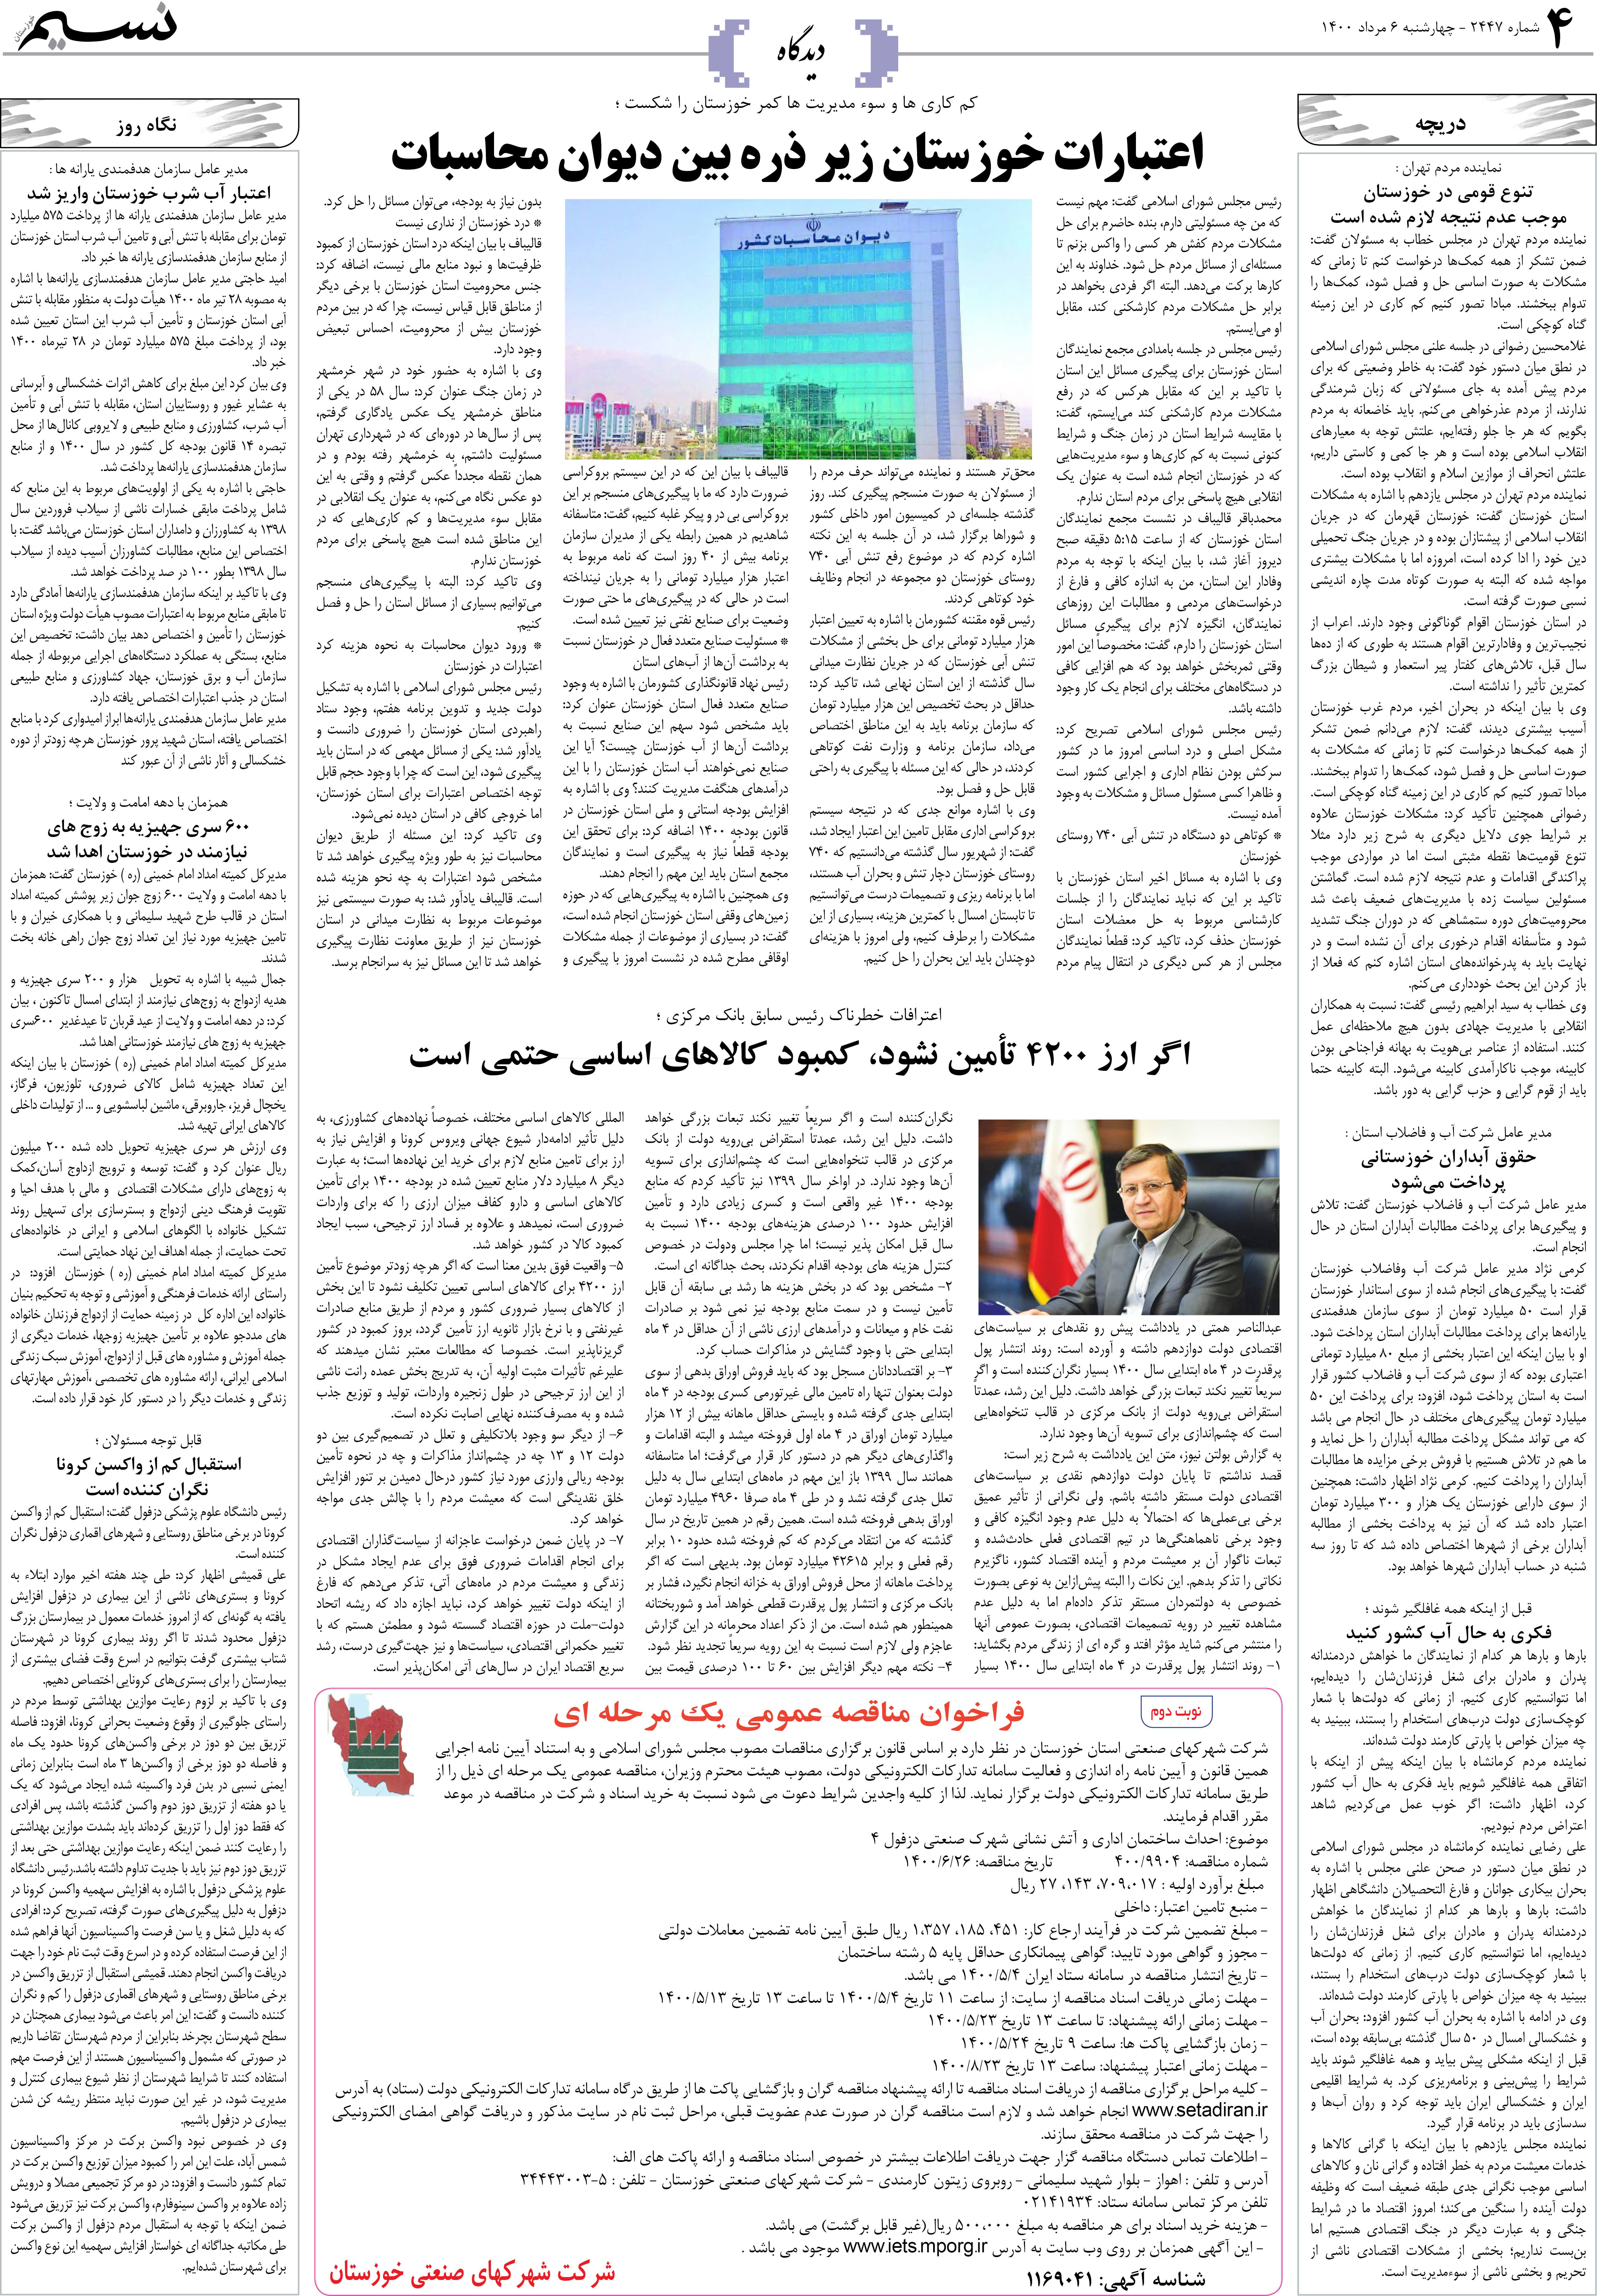 صفحه دیدگاه روزنامه نسیم شماره 2447